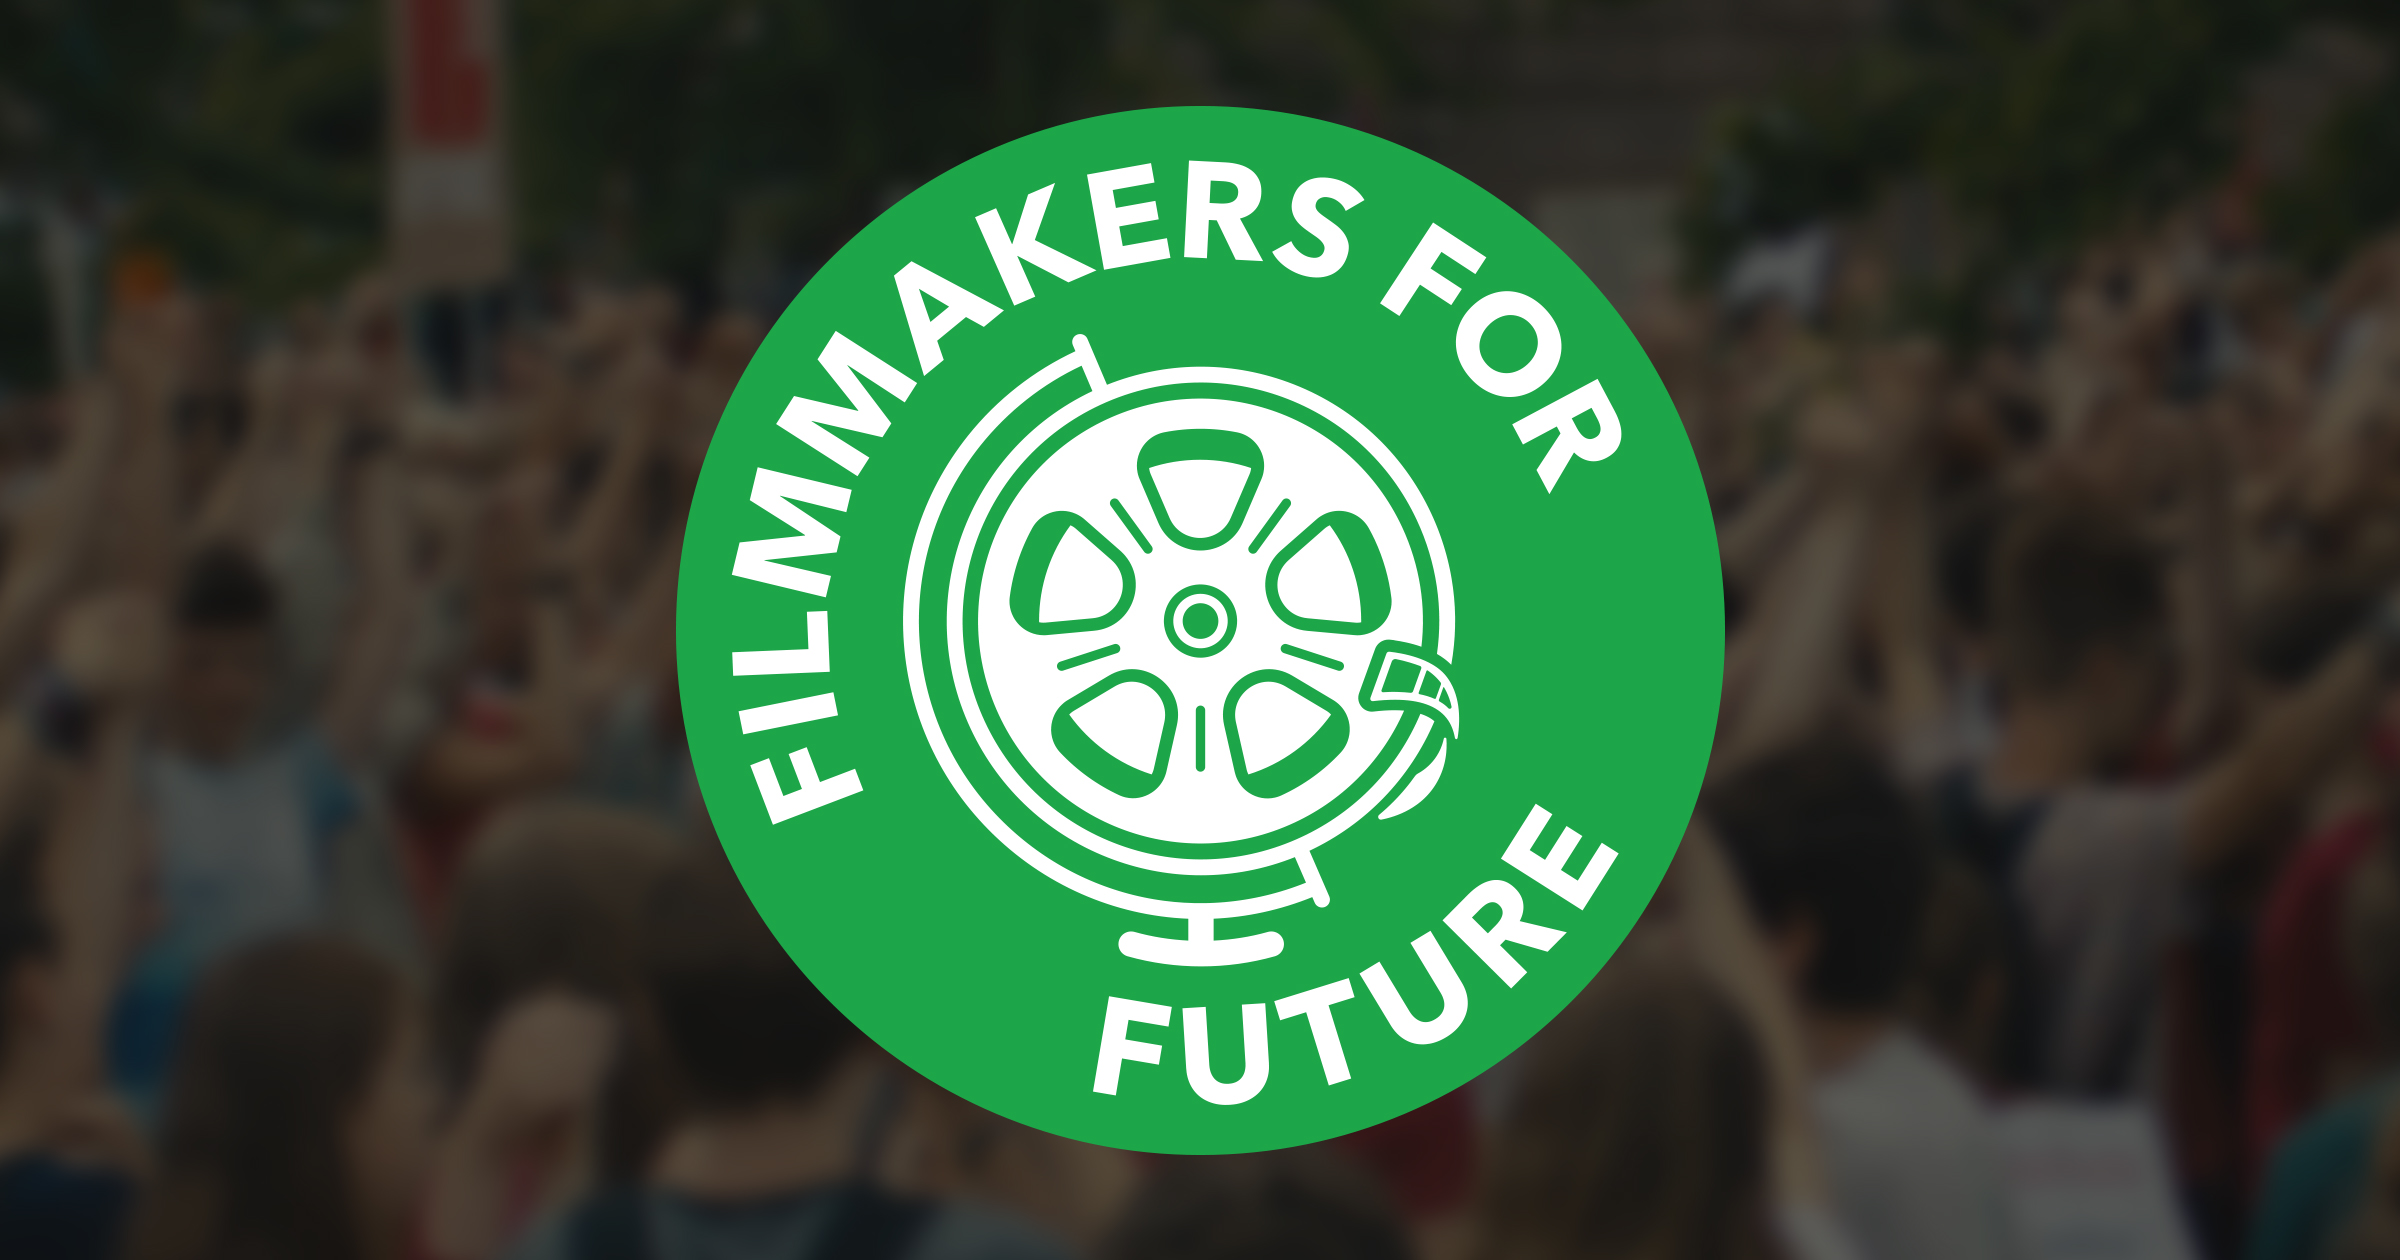 Filmmakers 4 Future